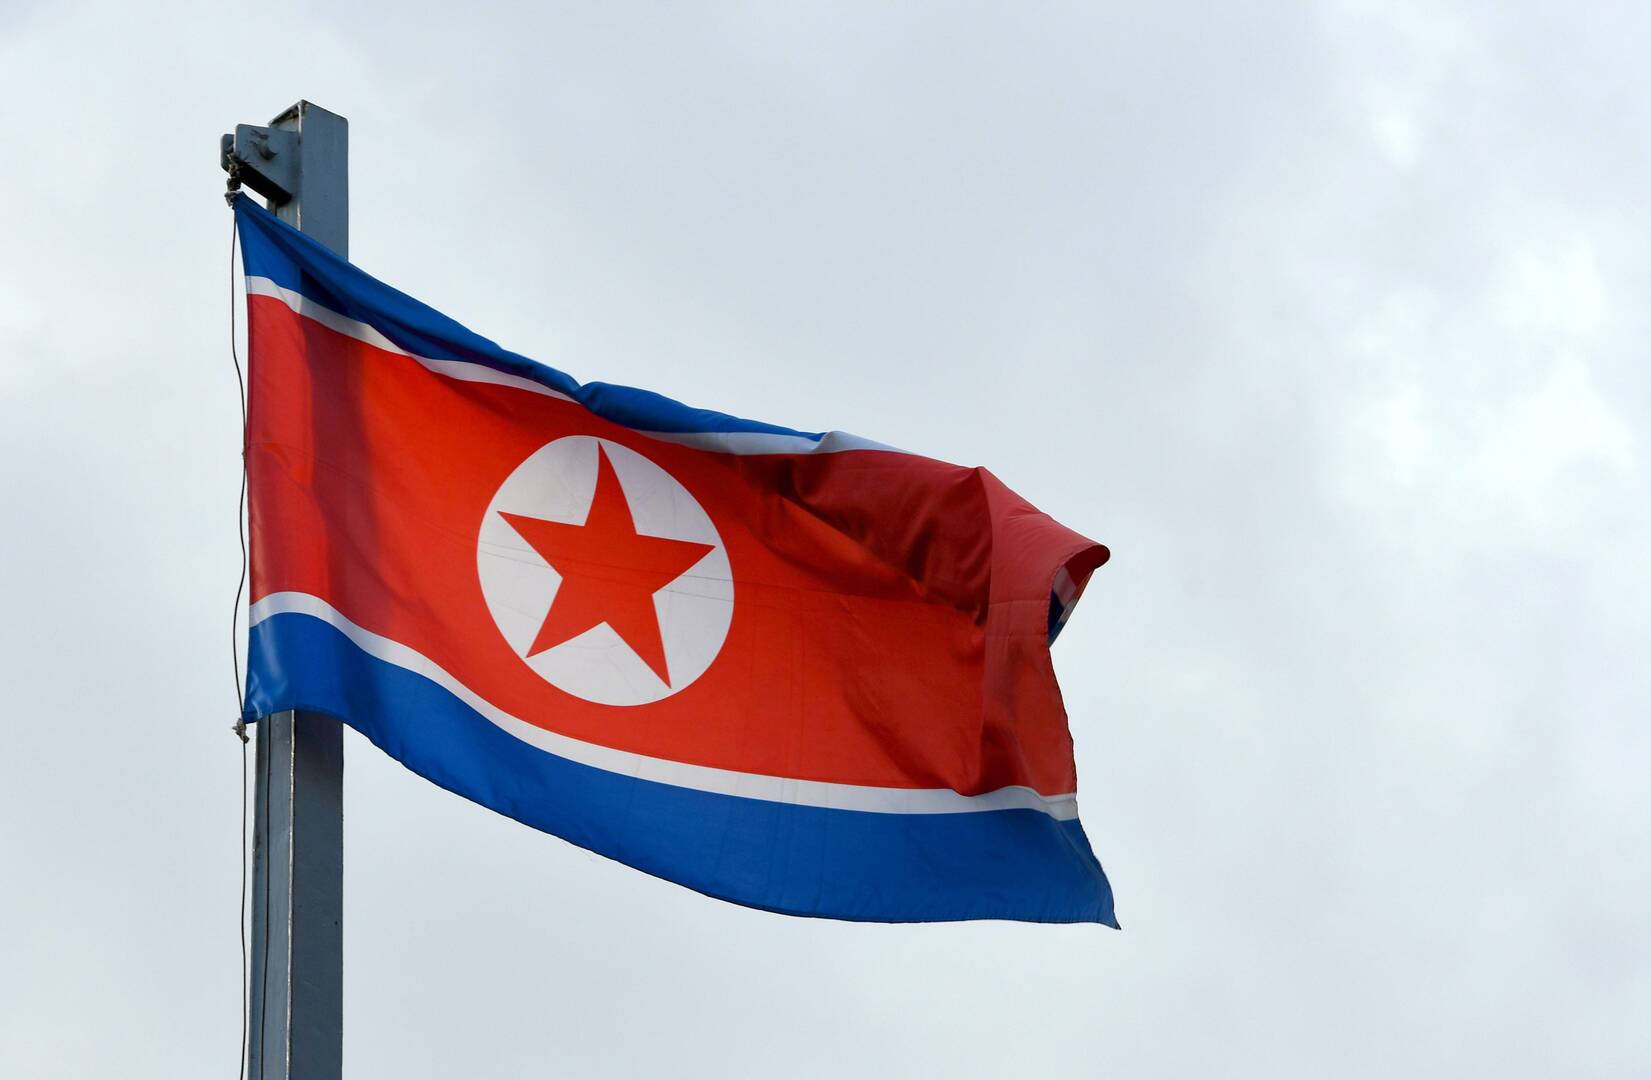 كوريا الشمالية تعبر عن غضبها بسبب انتقاد الأمم المتحدة والناتو لها